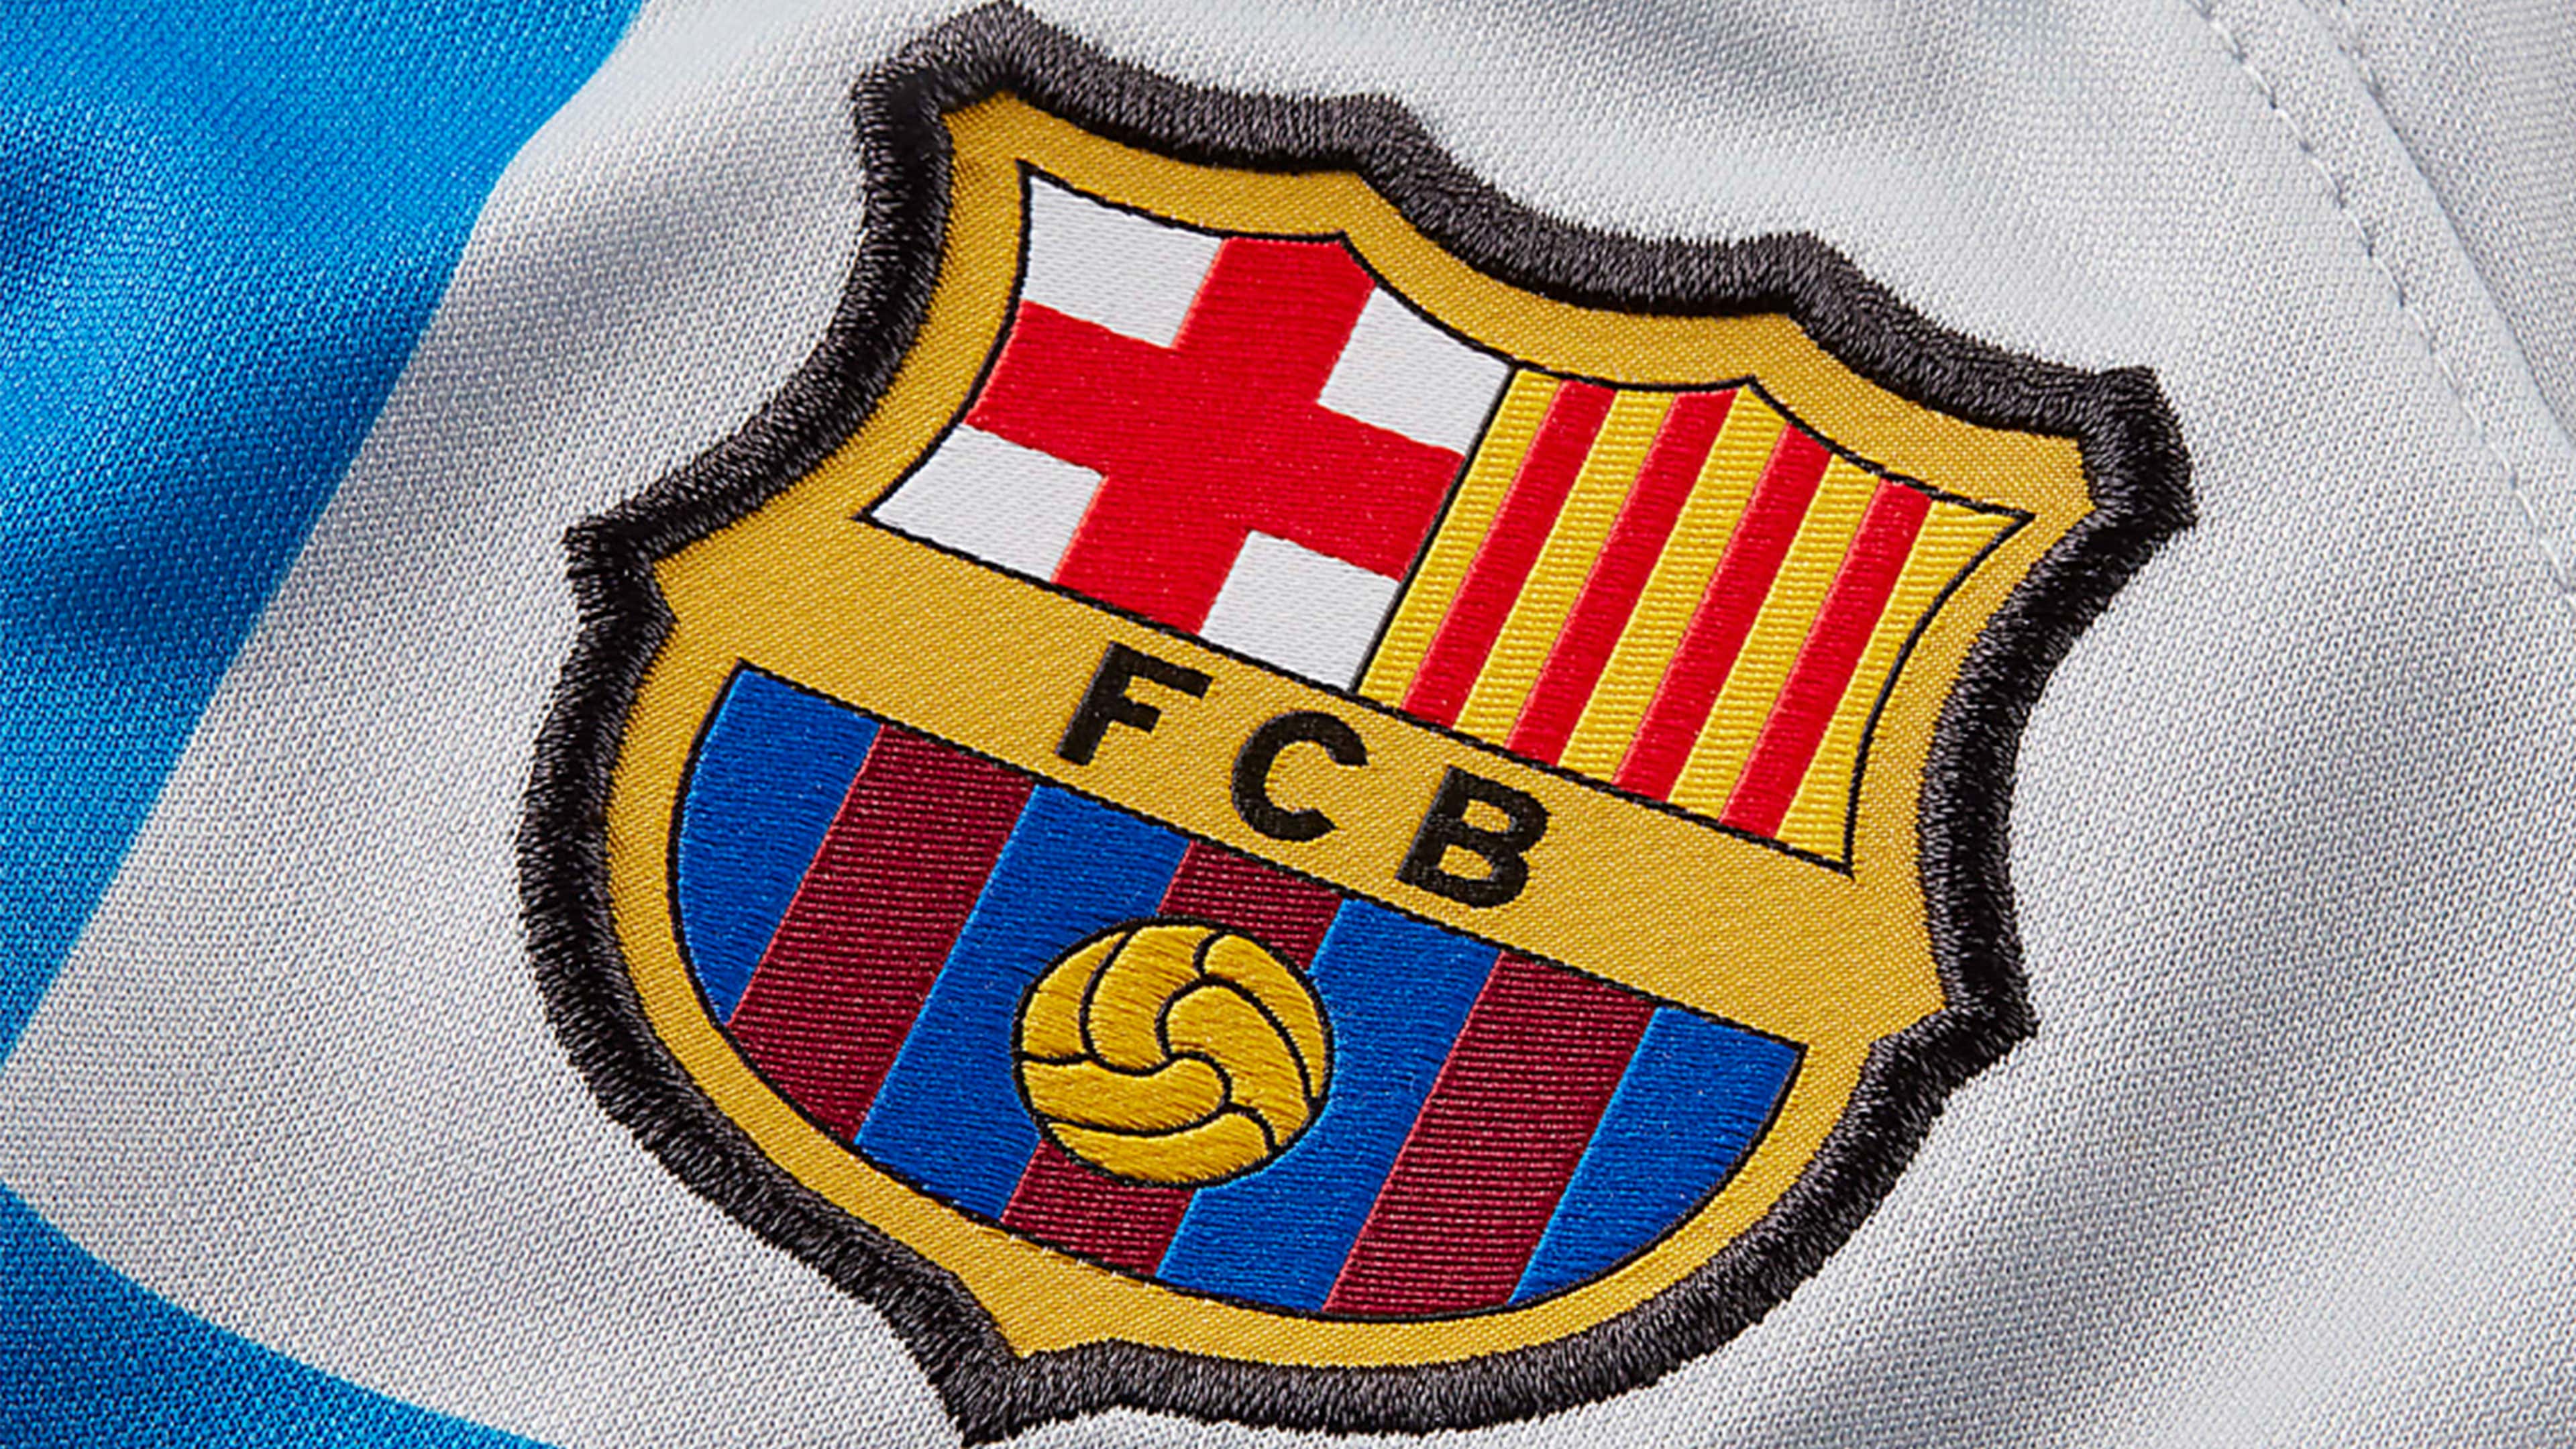 بسبب "قميص ريال مدريد".. جمهور برشلونة يستشيط غضبًا على وسائل التواصل الاجتماعي | مصر Goal.com